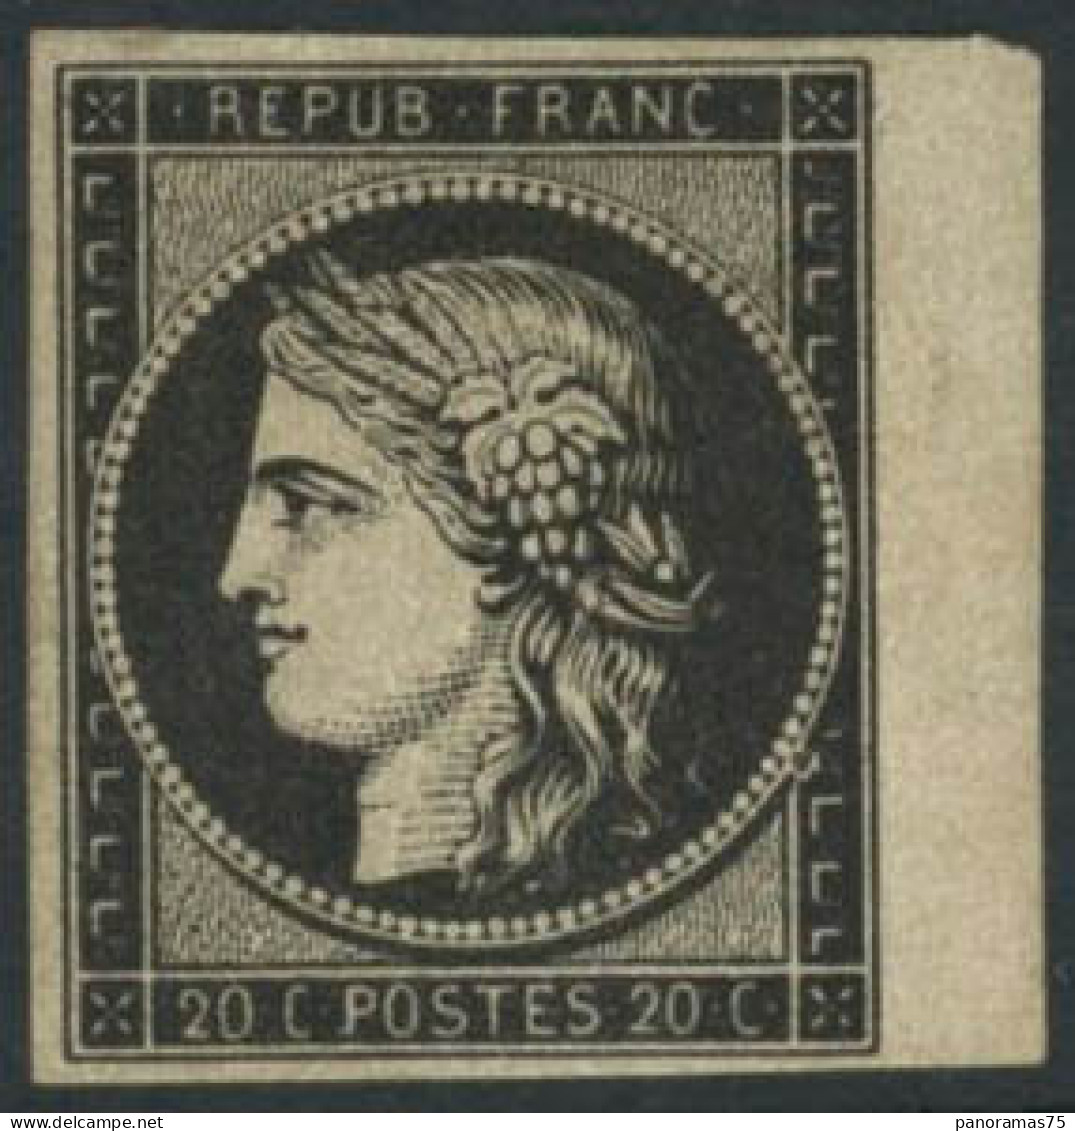 ** N°3 20c Noir S/jaune - TB - 1849-1850 Ceres